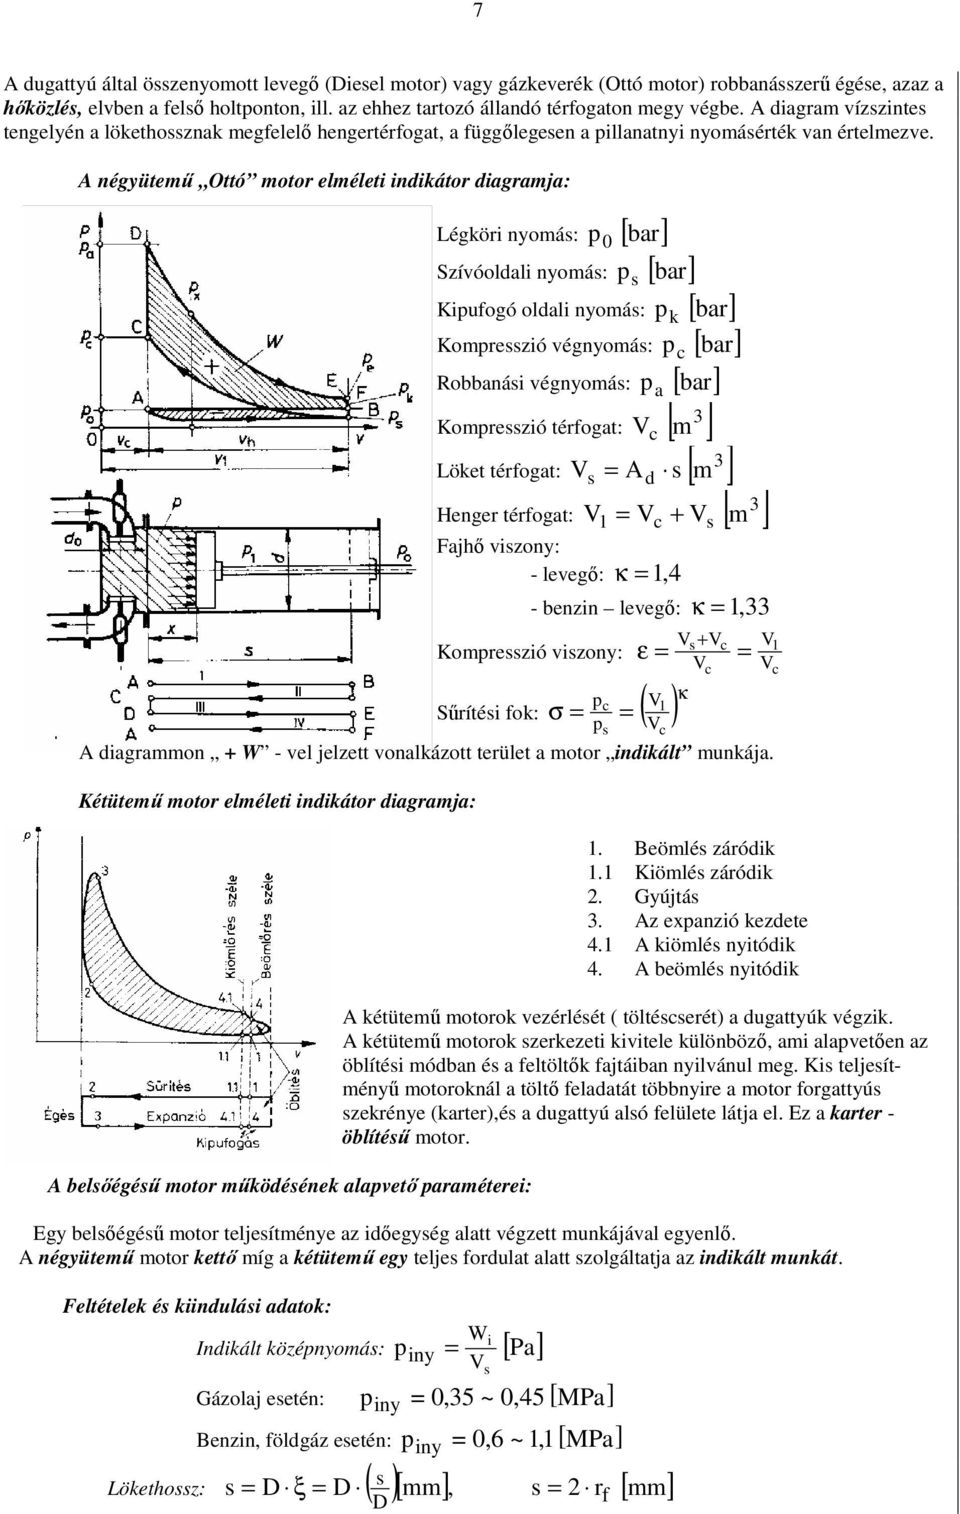 A négyütemő Ottó motor elméleti indikátor diagramja: Légköri nyomás: p 0 [ bar] Szívóoldali nyomás: p s [ bar] Kipufogó oldali nyomás: p k [ bar] Kompresszió végnyomás: p c [ bar] Robbanási